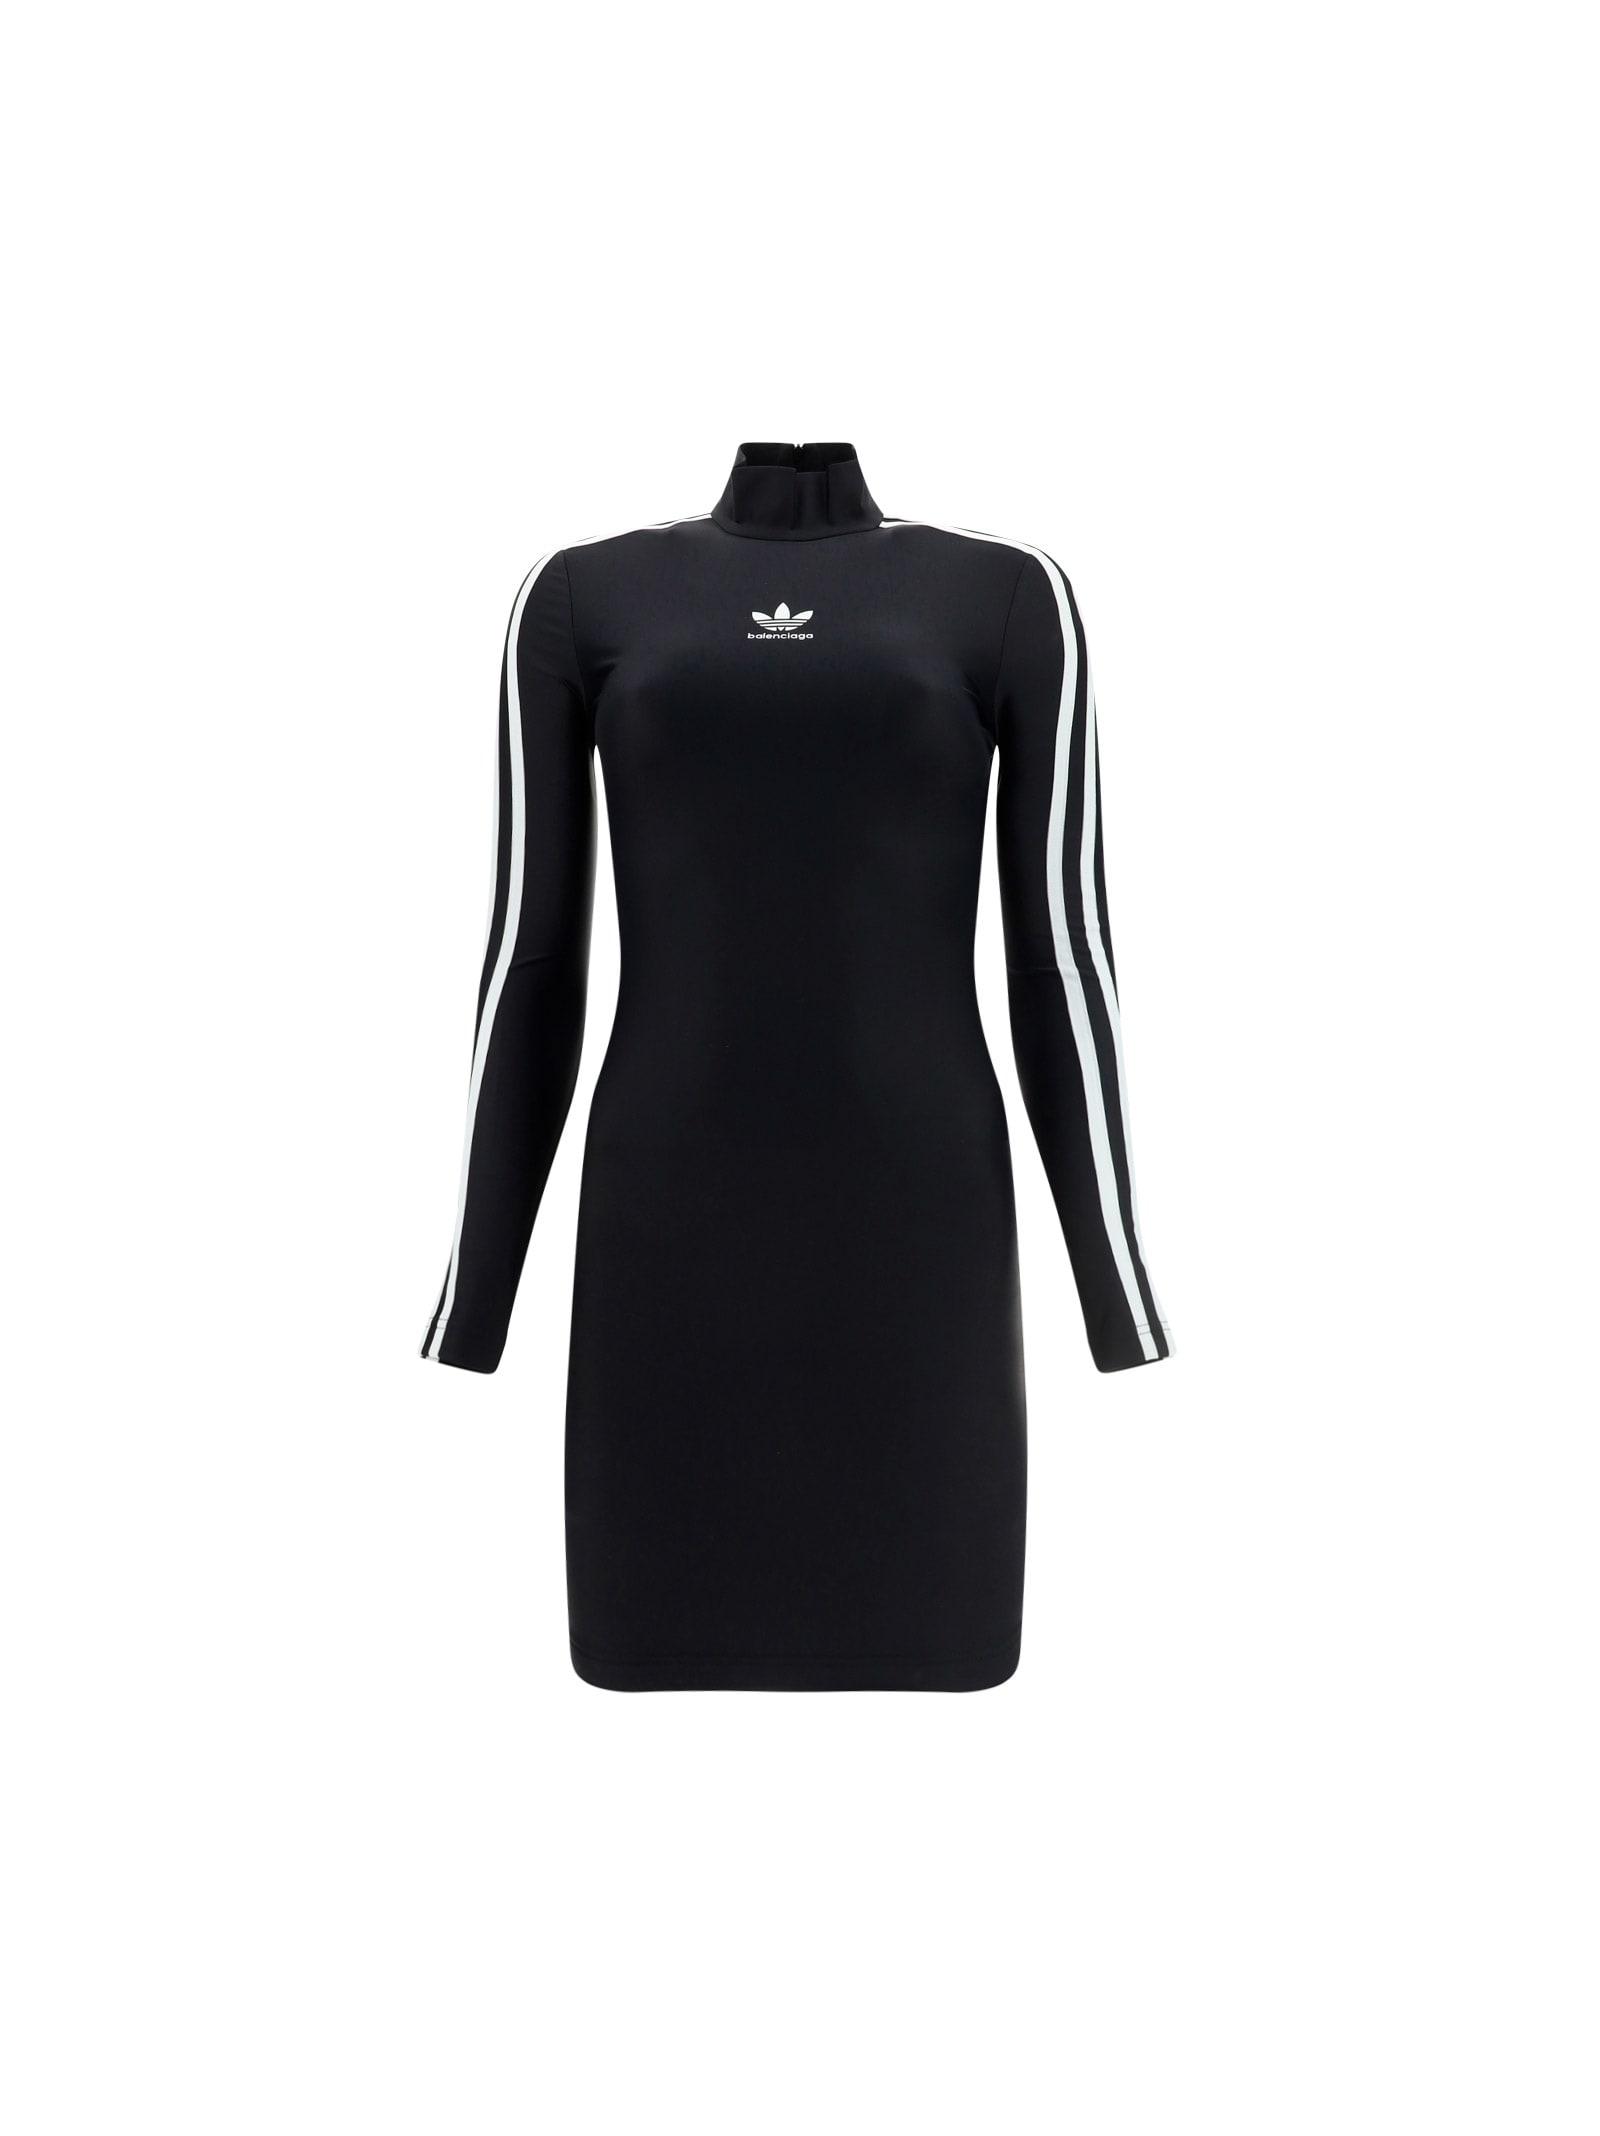 Balenciaga X Adidas Dress in Black | Lyst